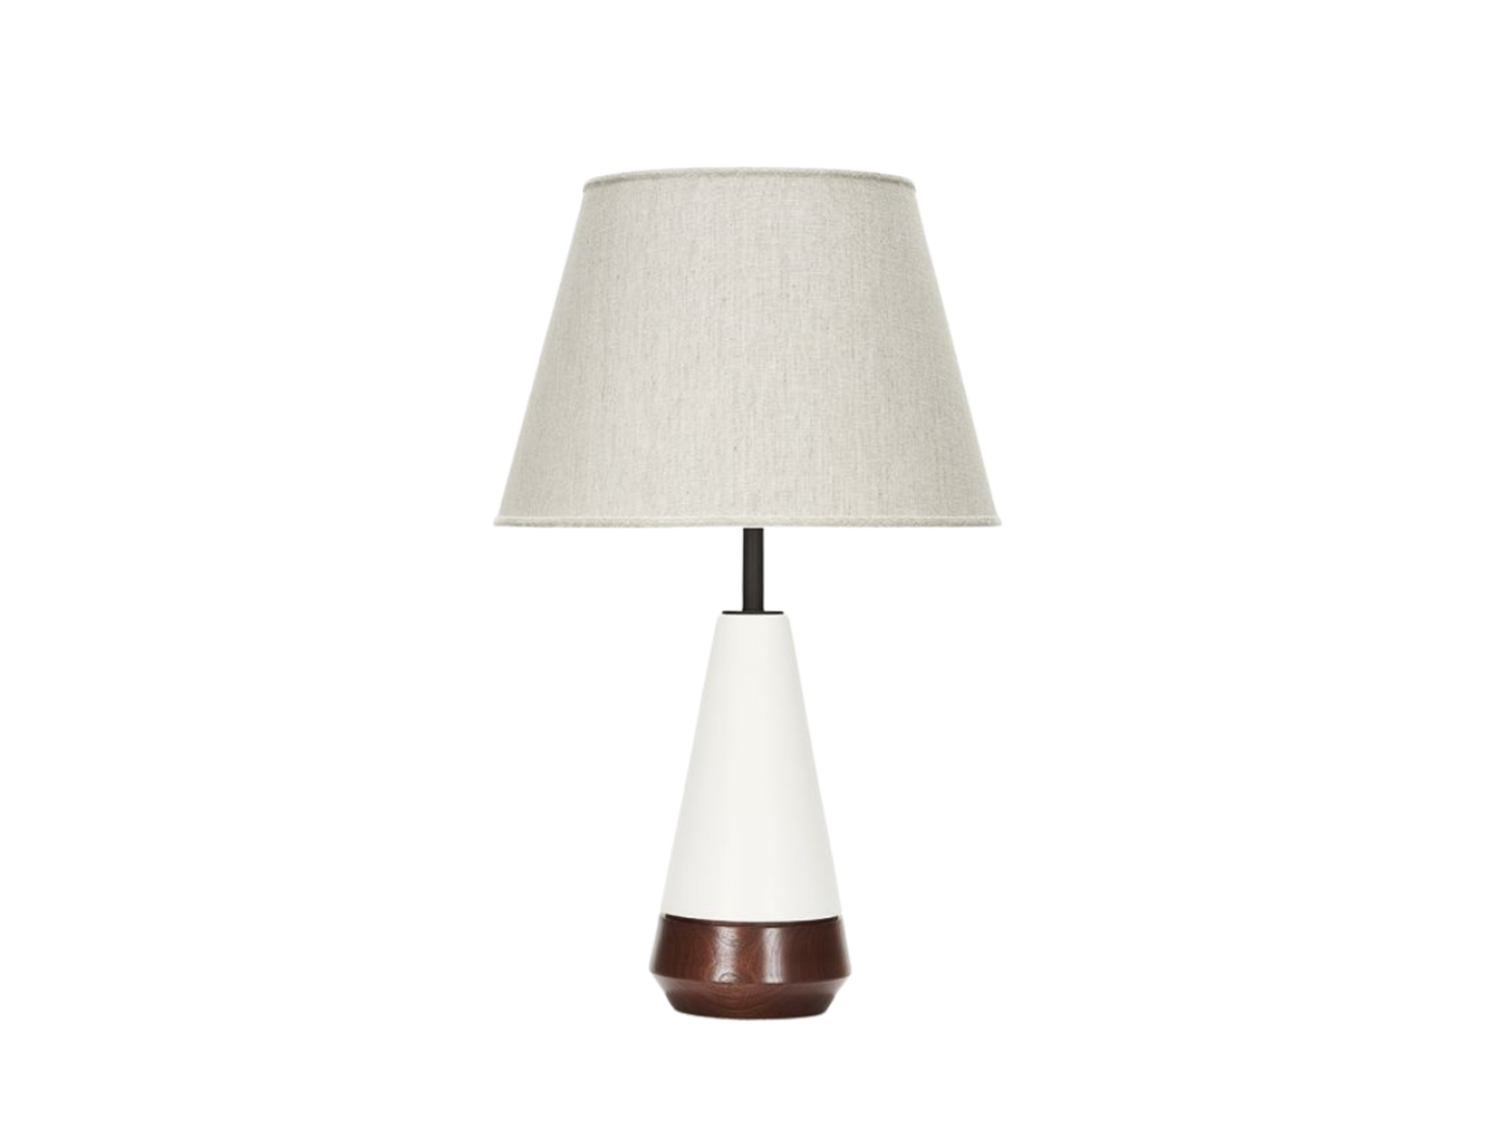 Mercer Lamp